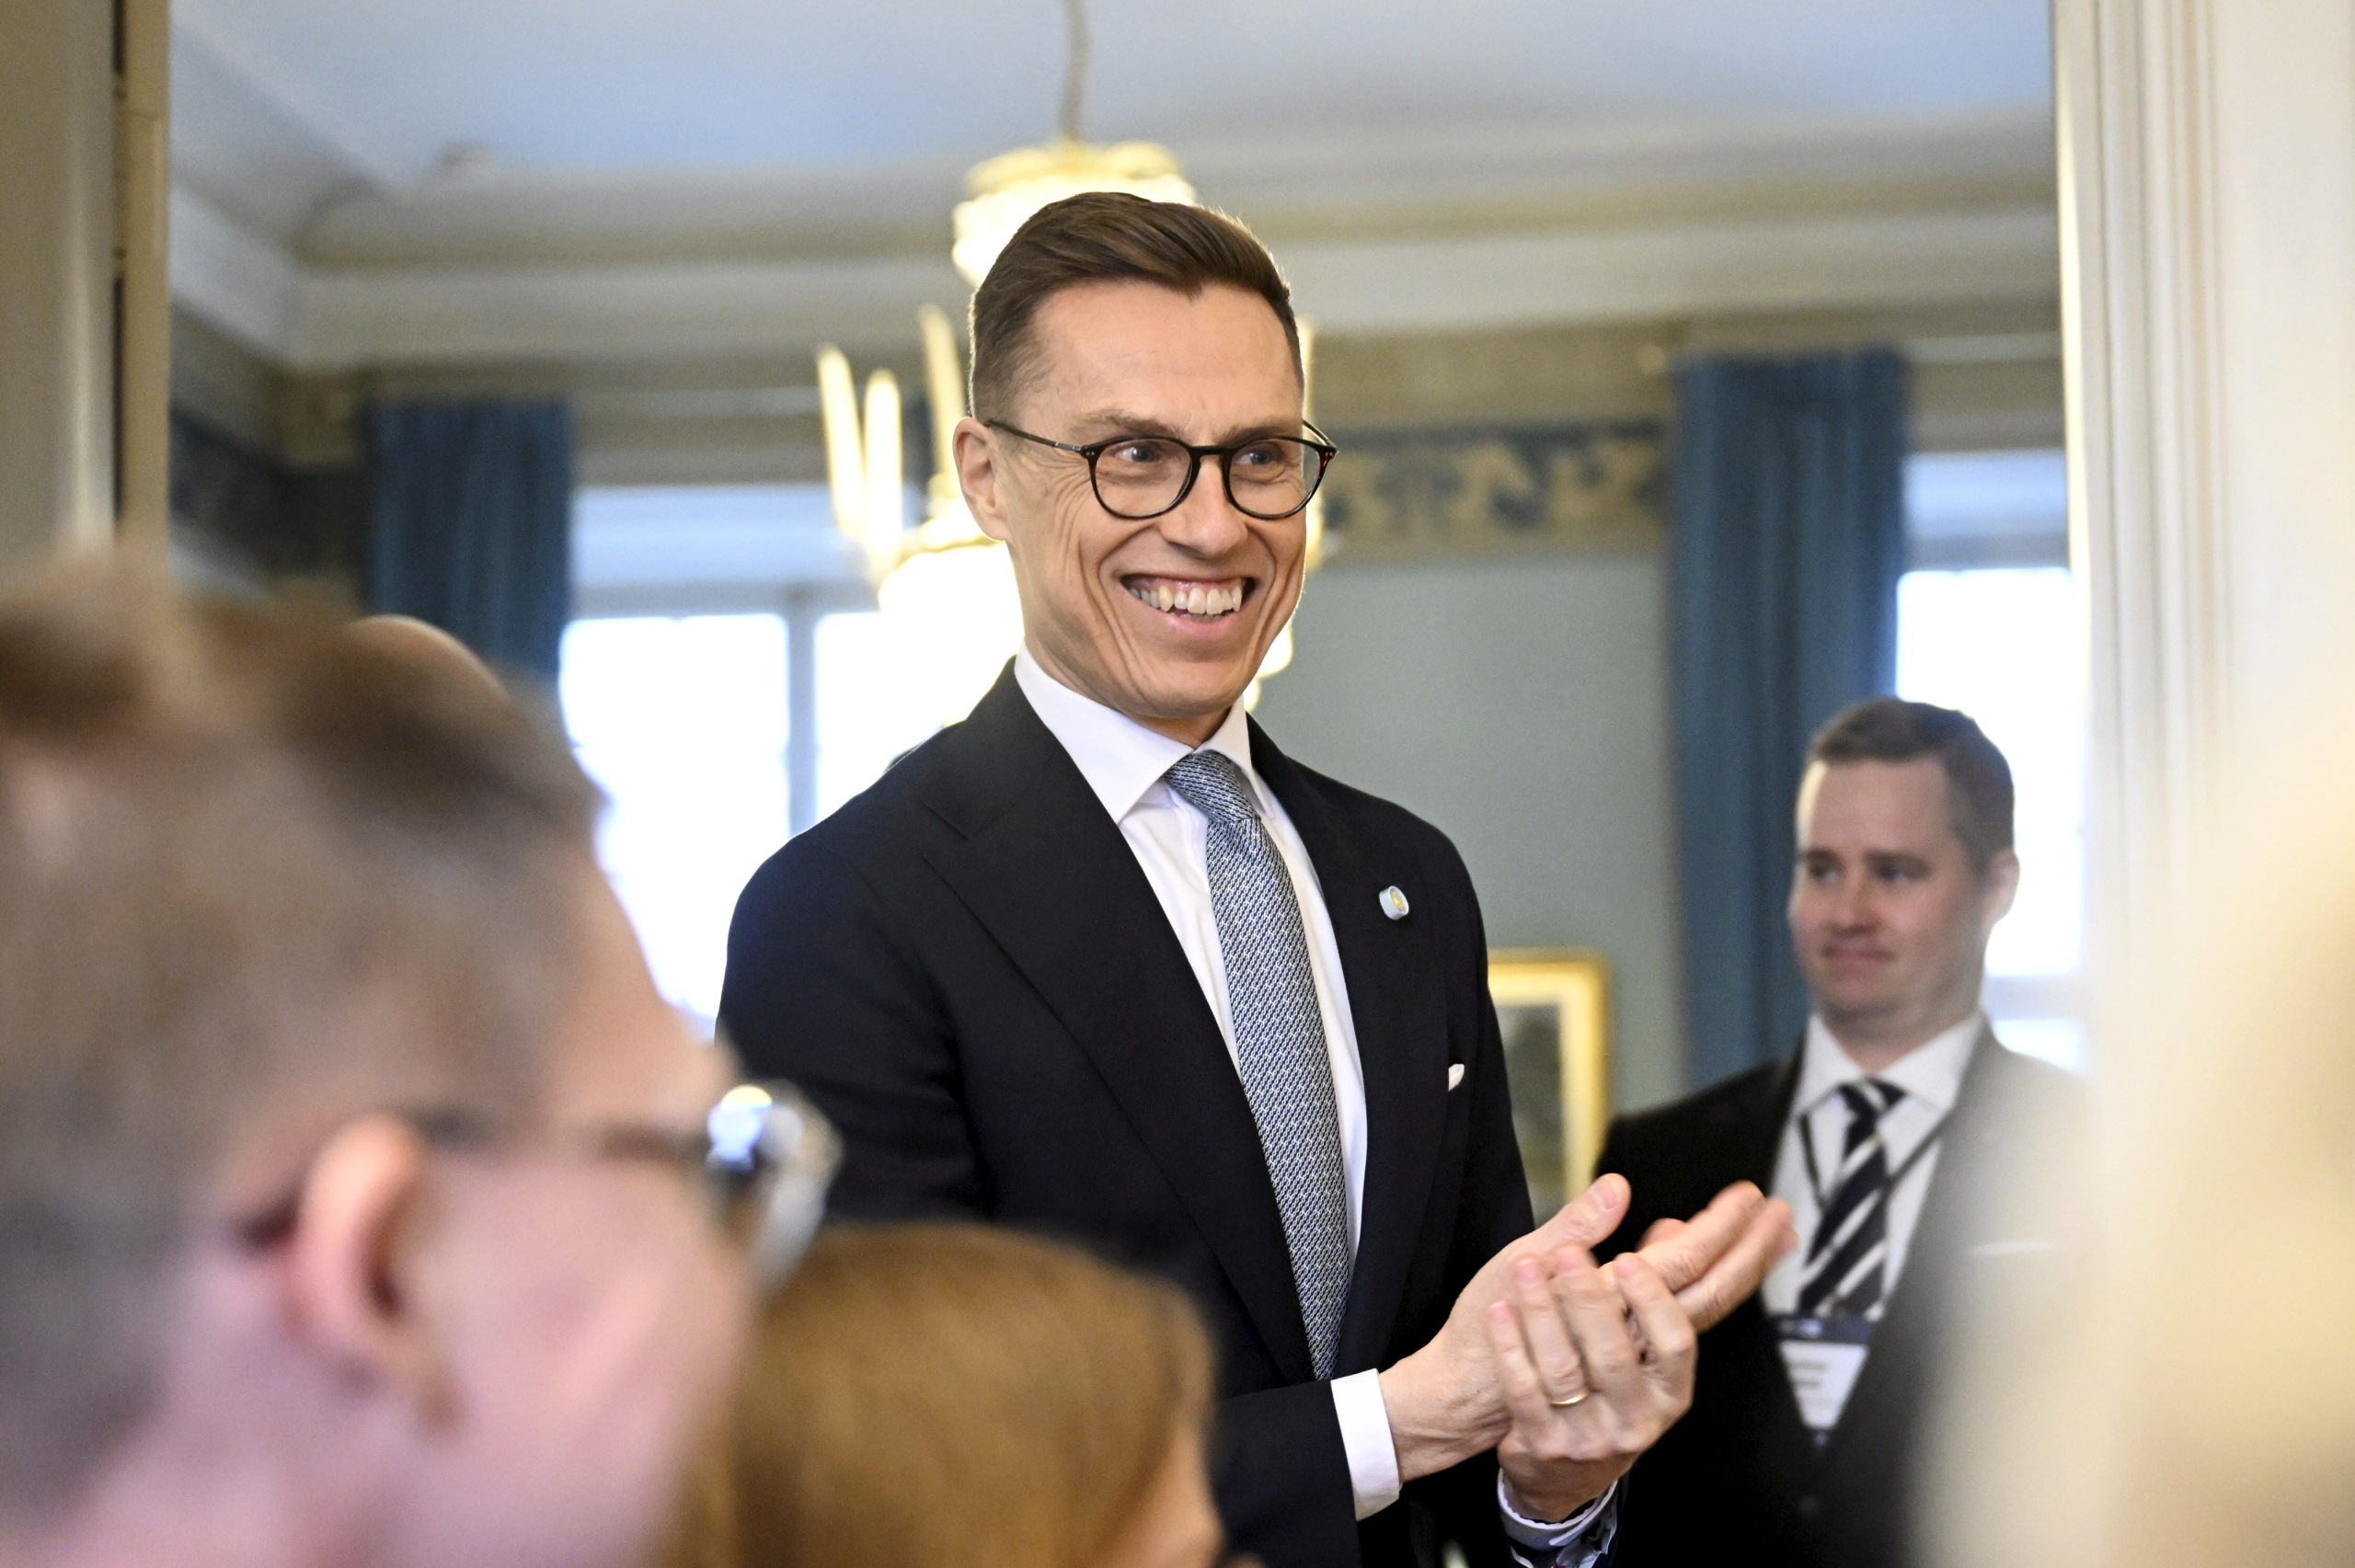 presidentti stubb tarjoili ruotsalaisille aurinkoista yhteiseloa